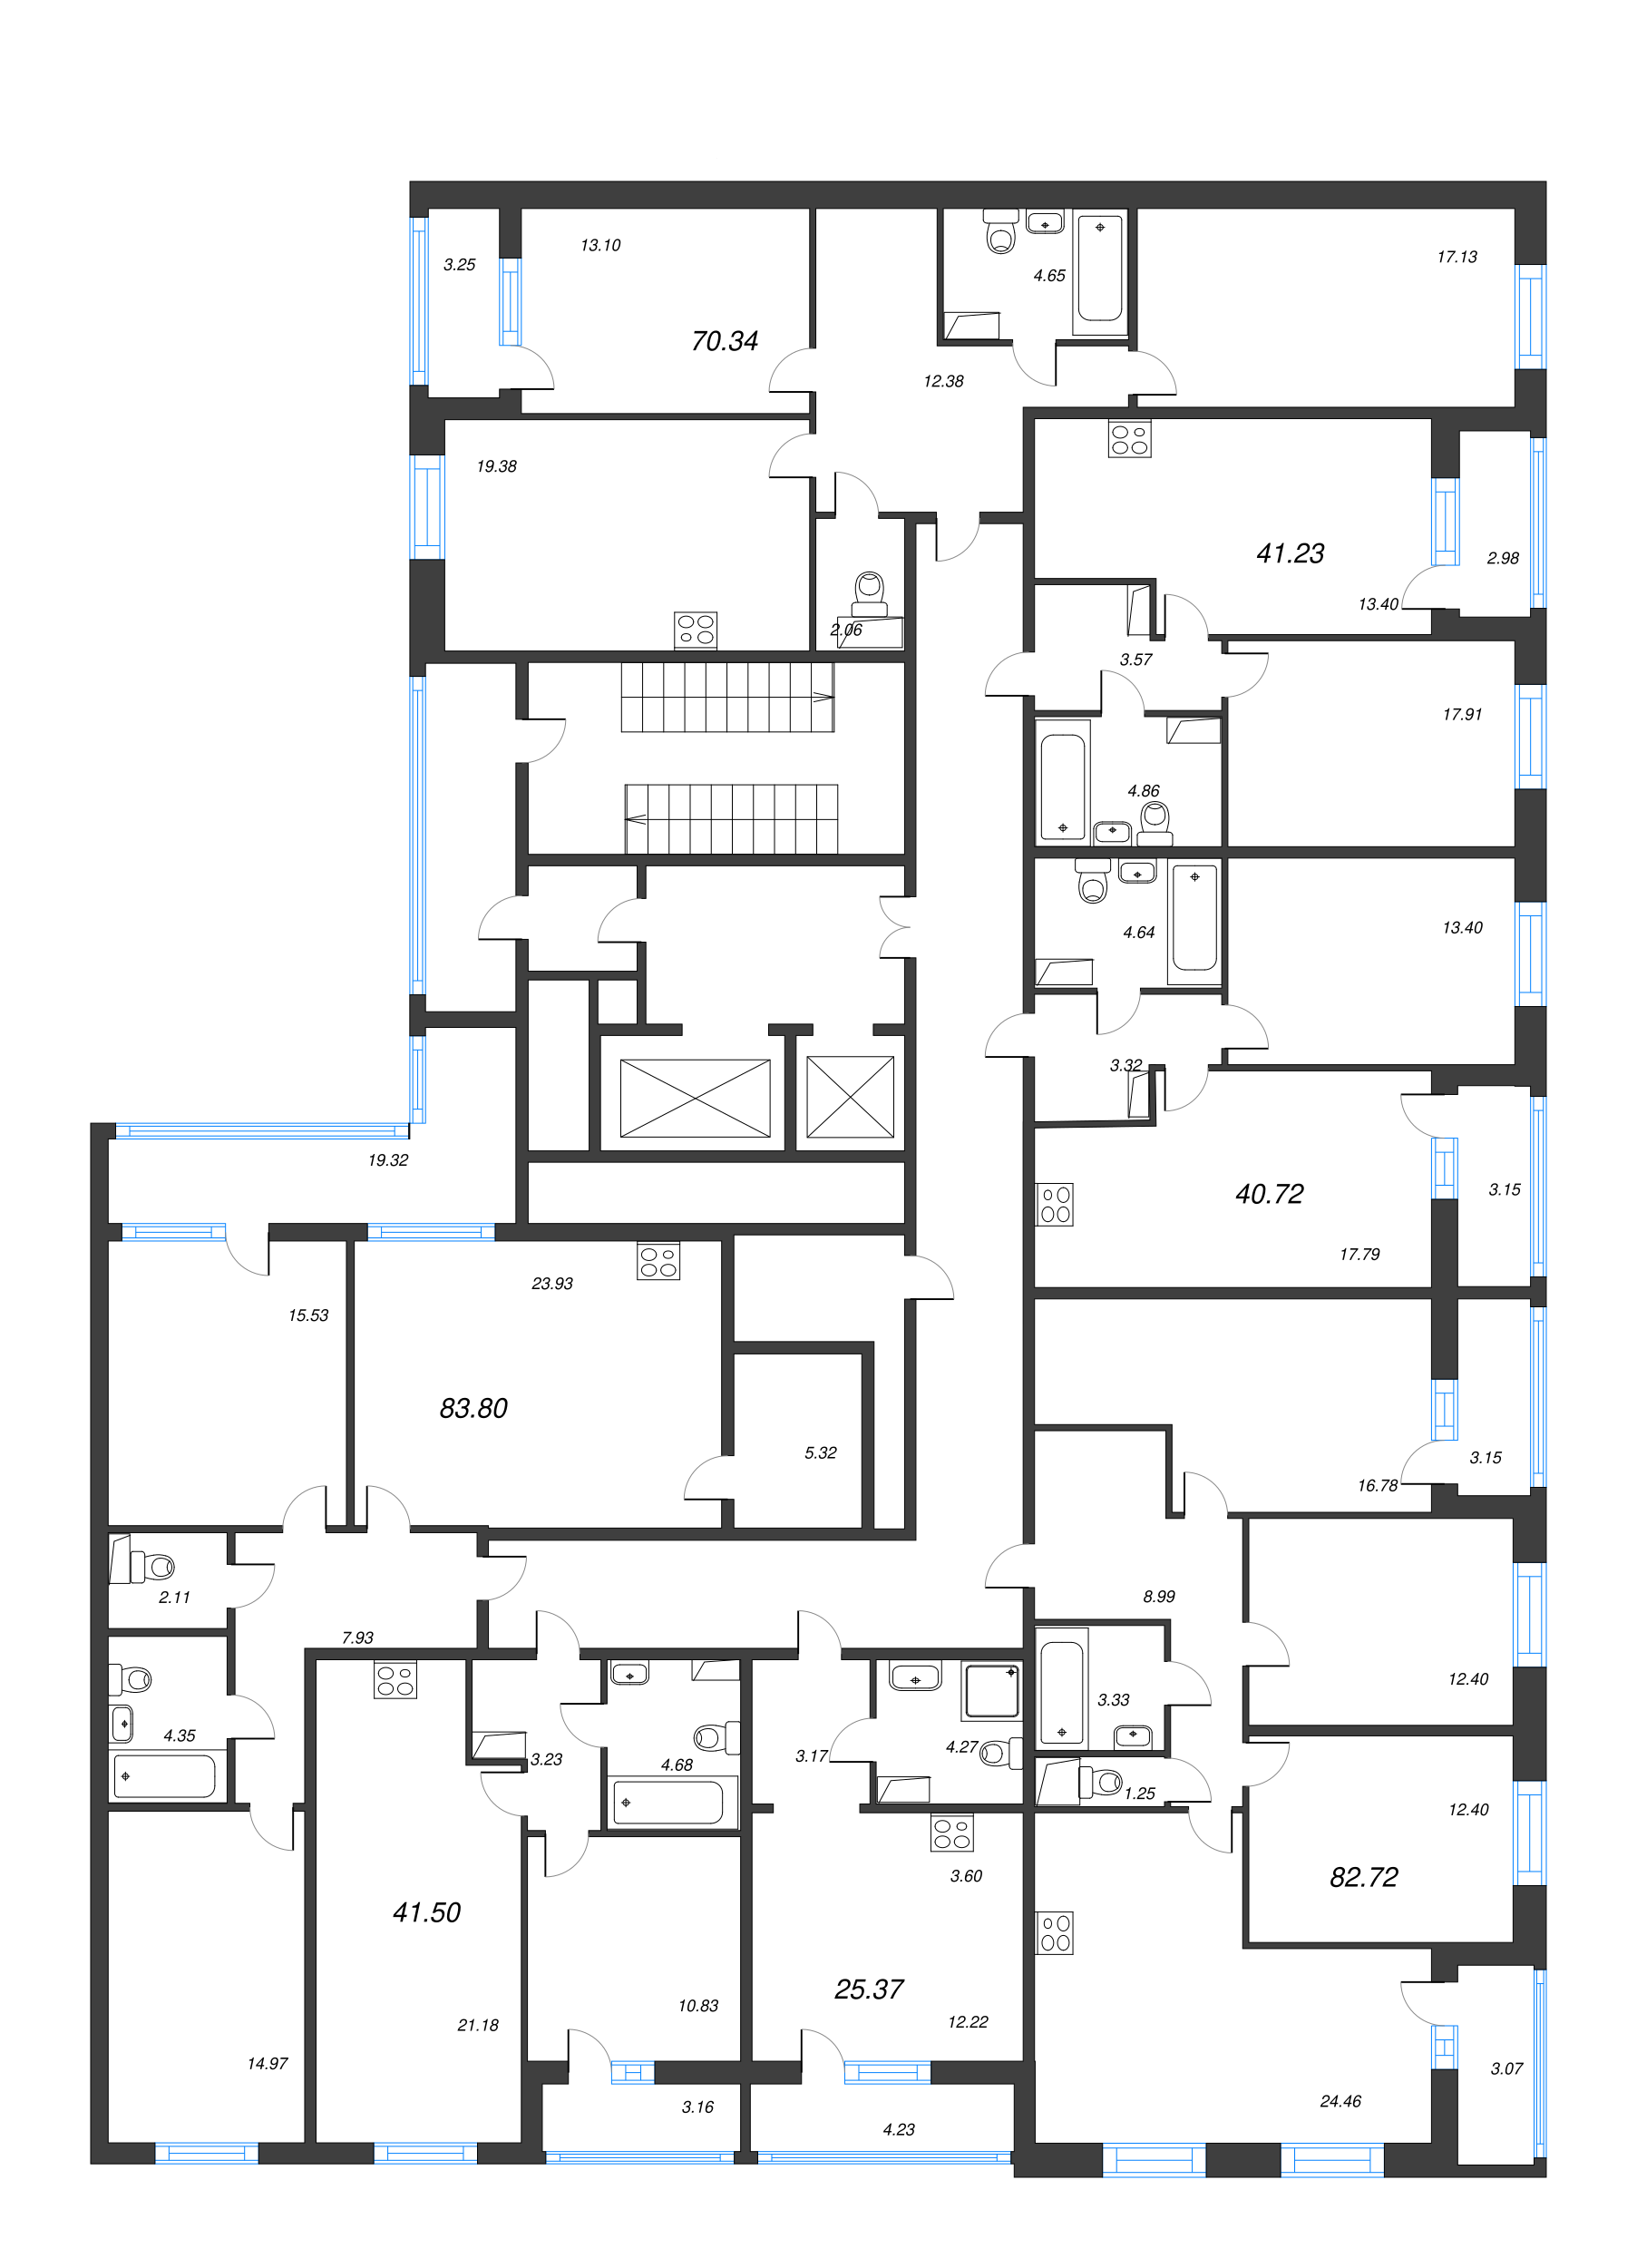 Квартира-студия, 25.37 м² в ЖК "Аквилон Leaves" - планировка этажа